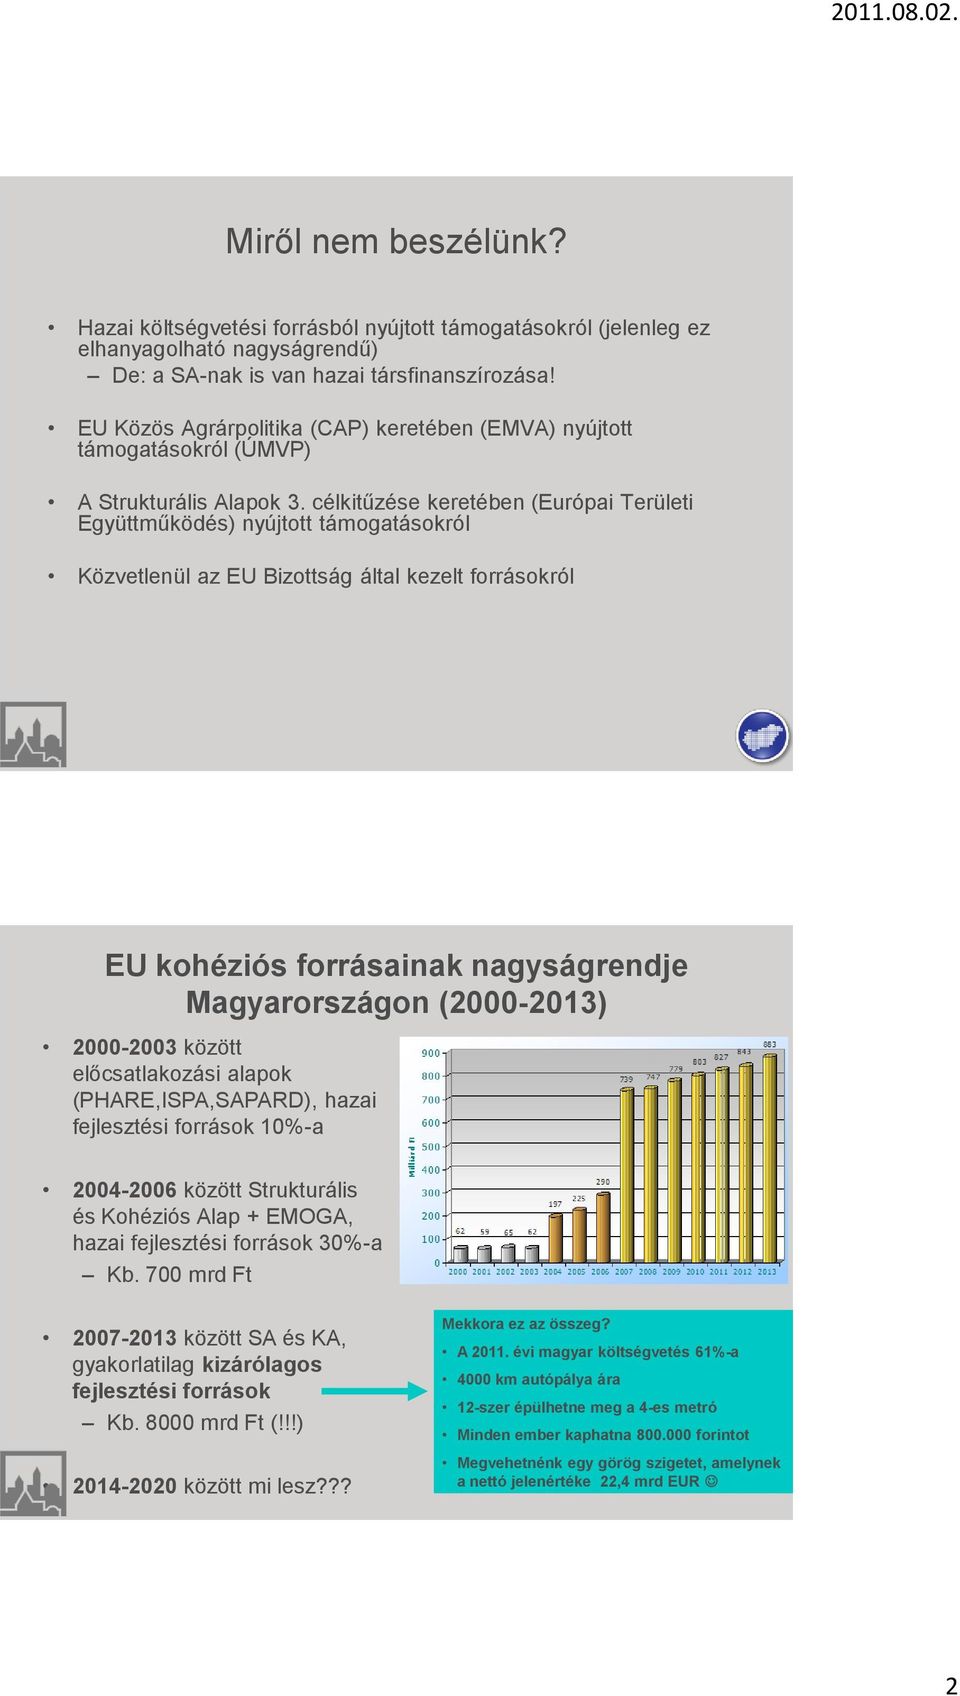 célkitűzése keretében (Európai Területi Együttműködés) nyújtott támogatásokról Közvetlenül az EU Bizottság által kezelt forrásokról EU kohéziós forrásainak nagyságrendje Magyarországon (2000-2013)